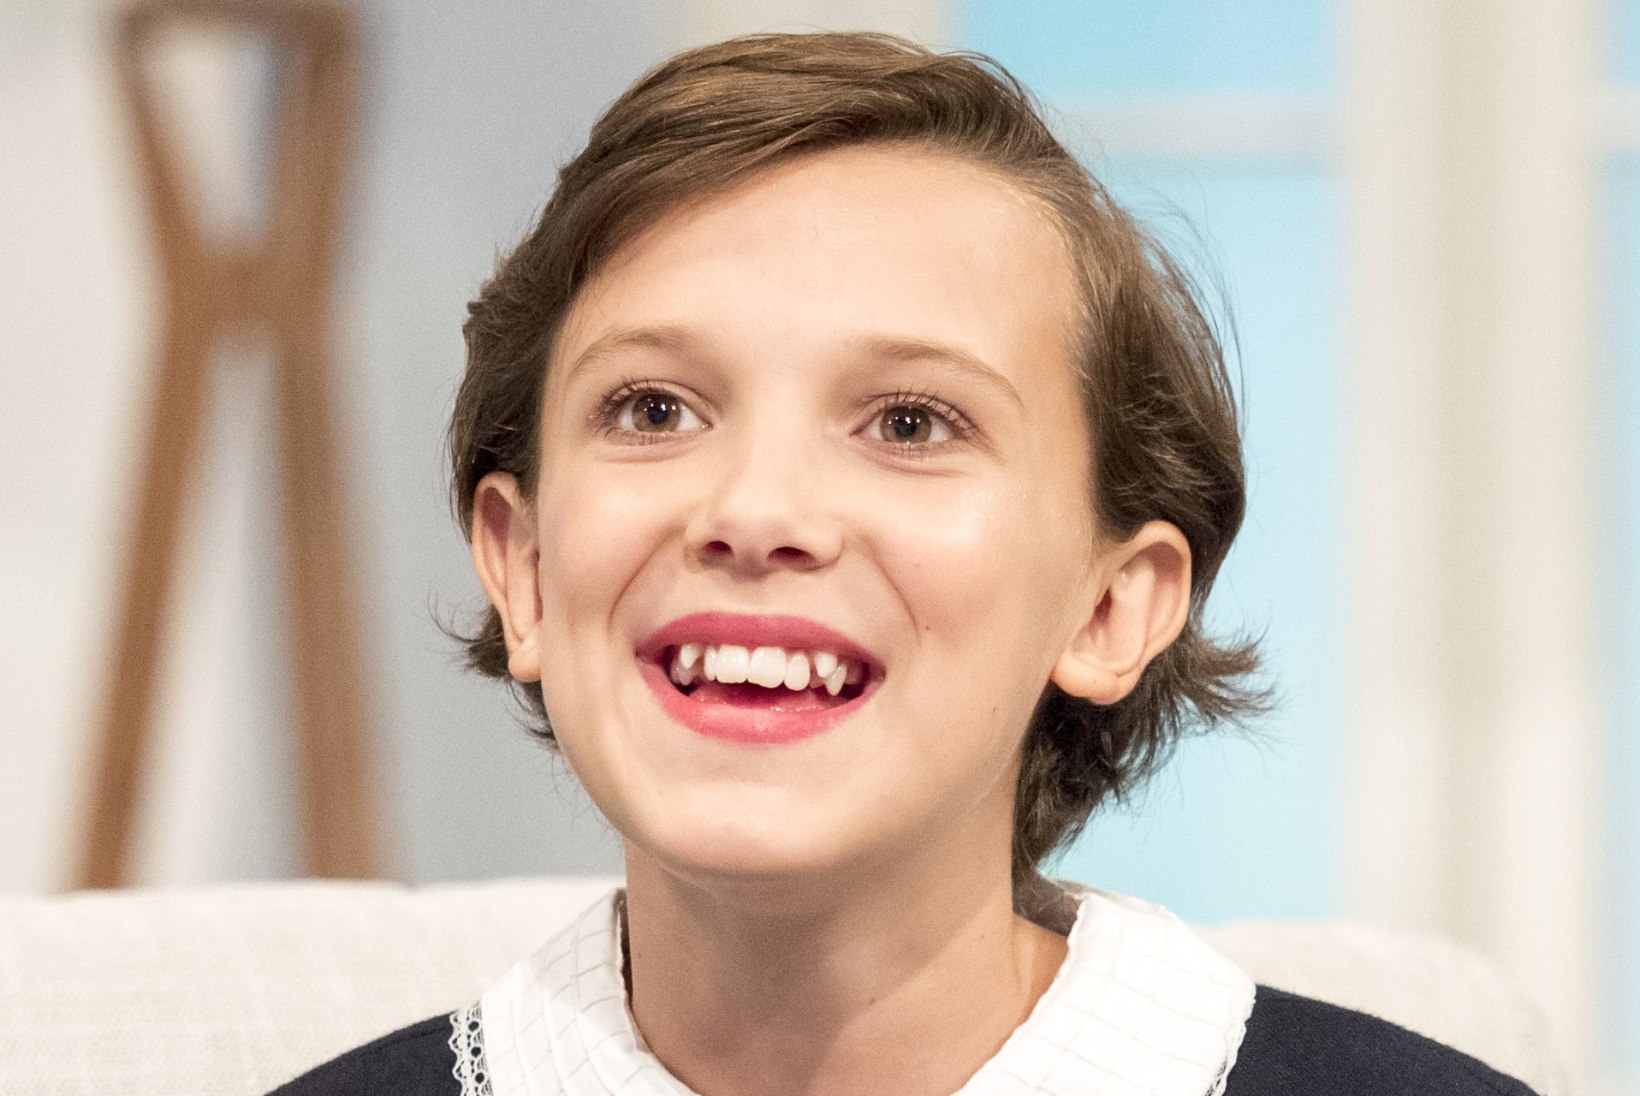 16aastane teletäht demonstreeris uusi hambaid